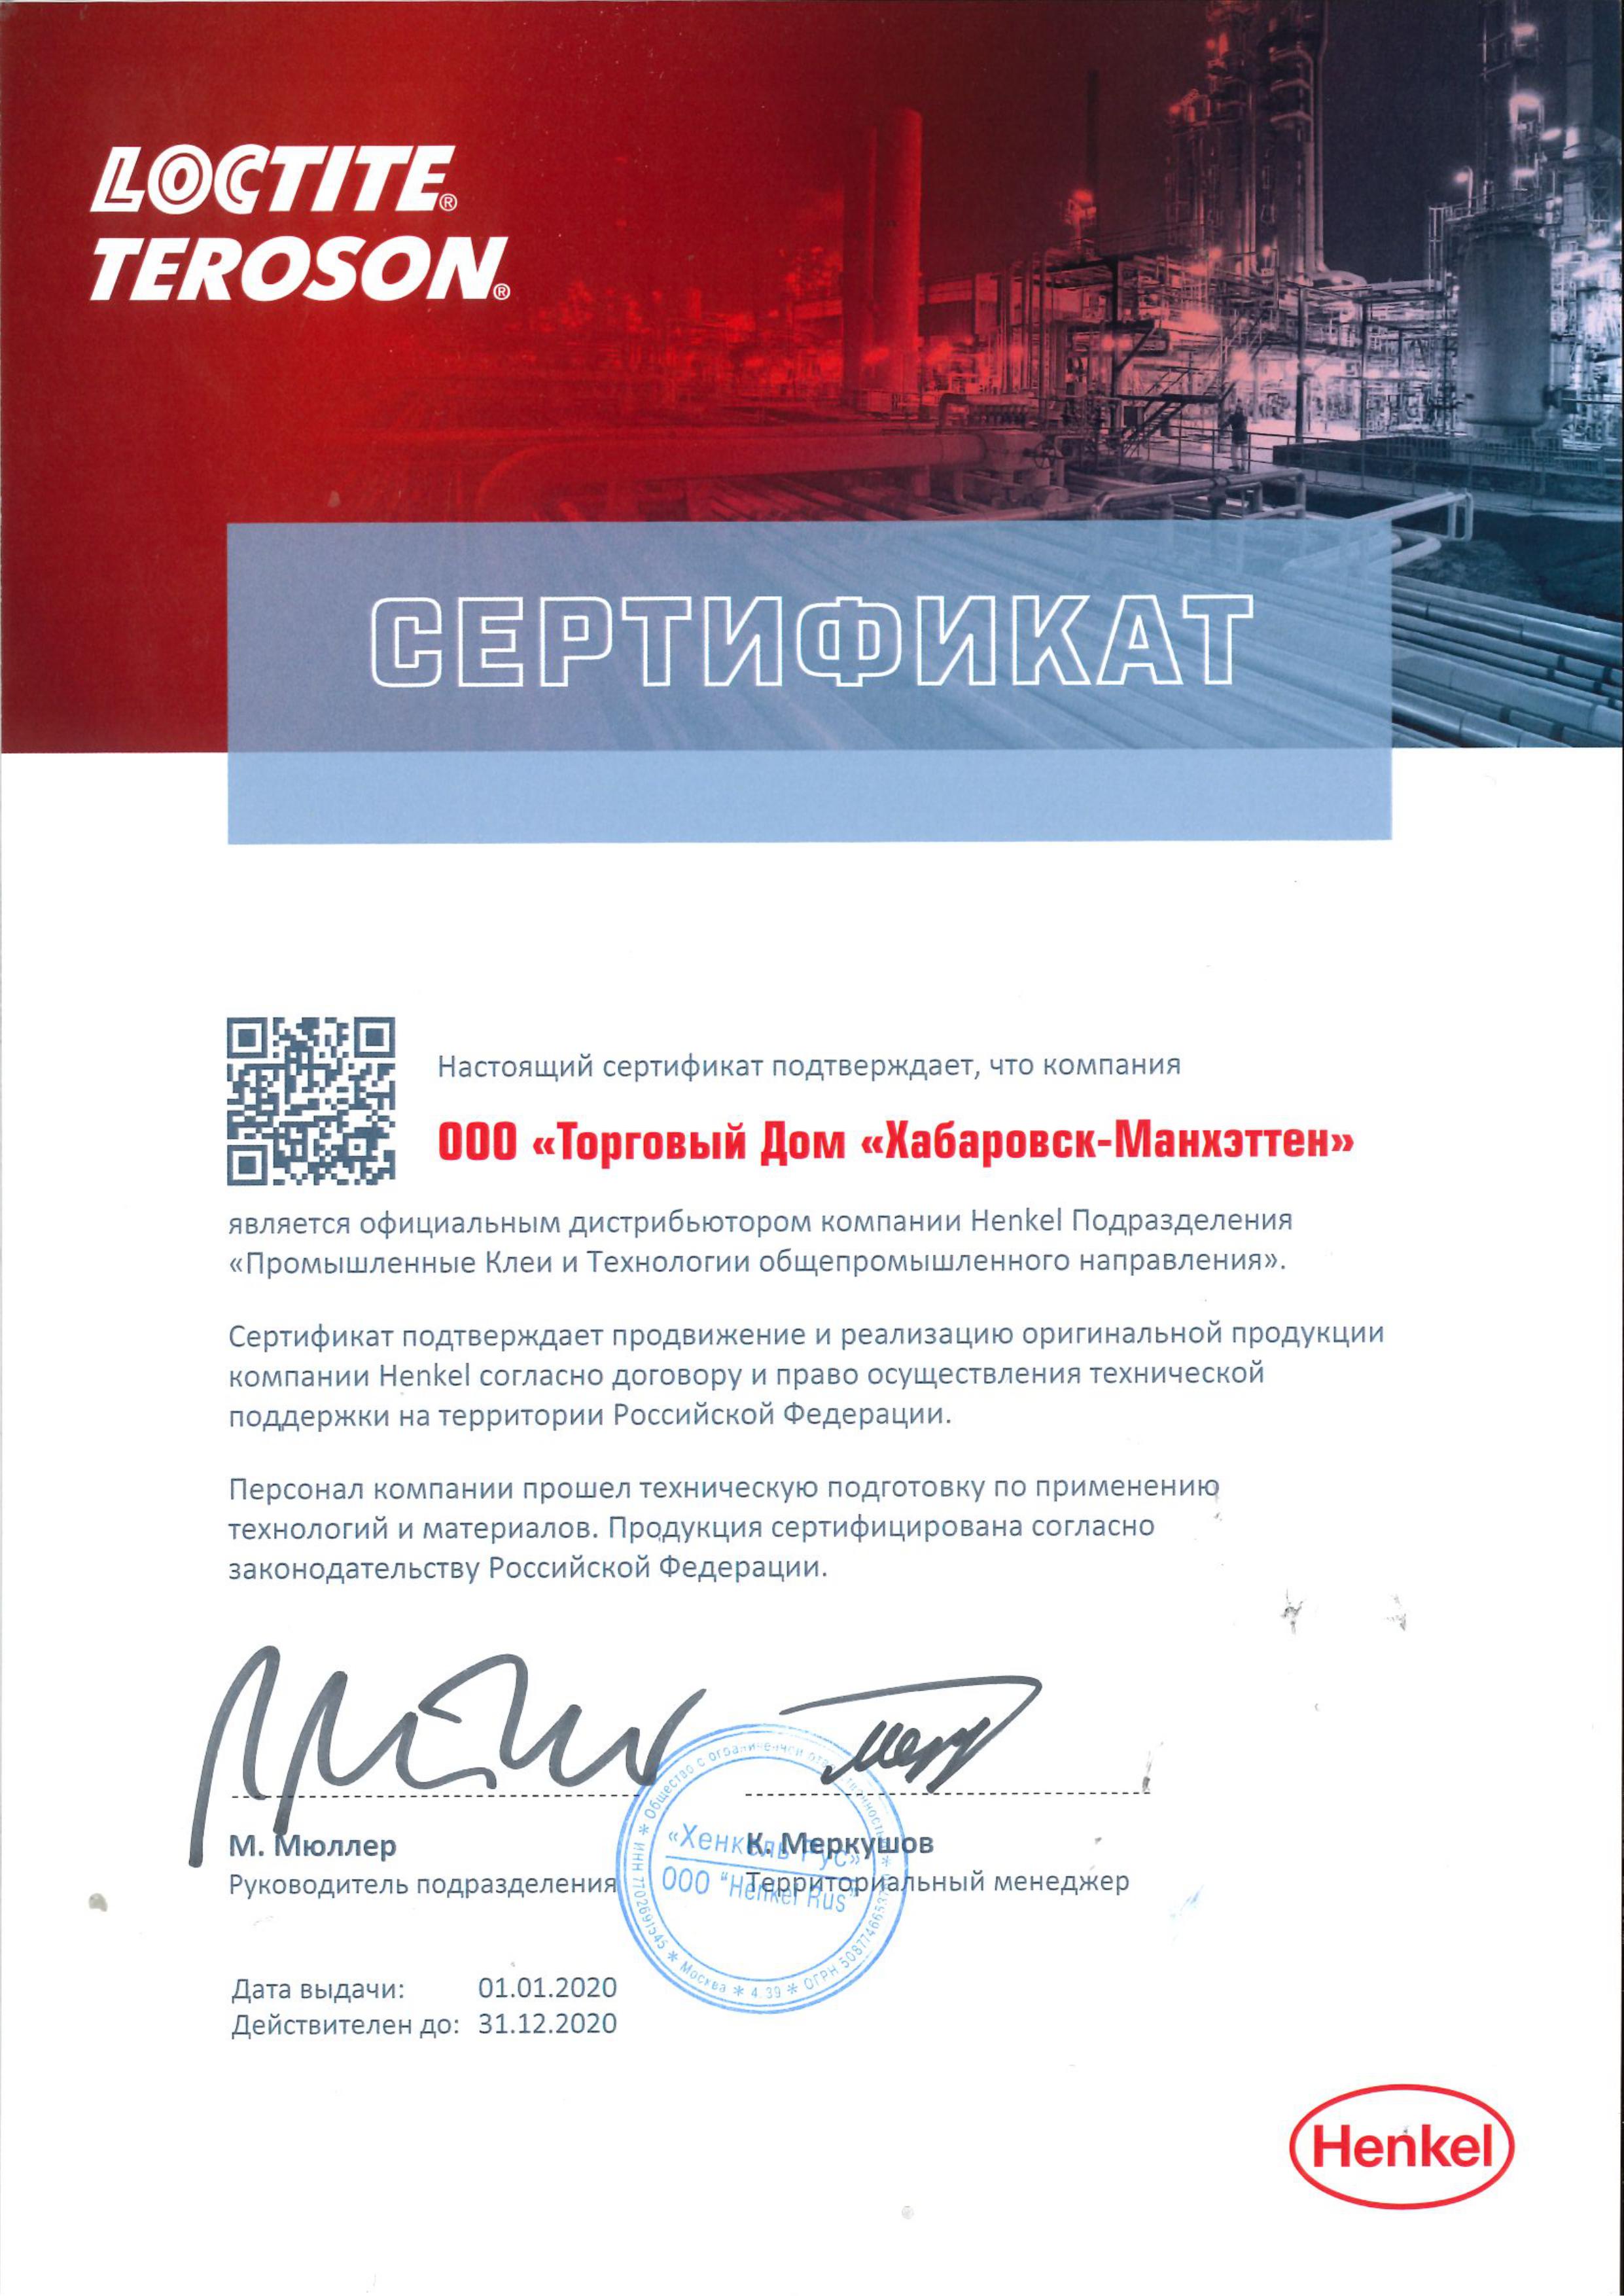 Сертификат официального дистрибьютора компании Henkel